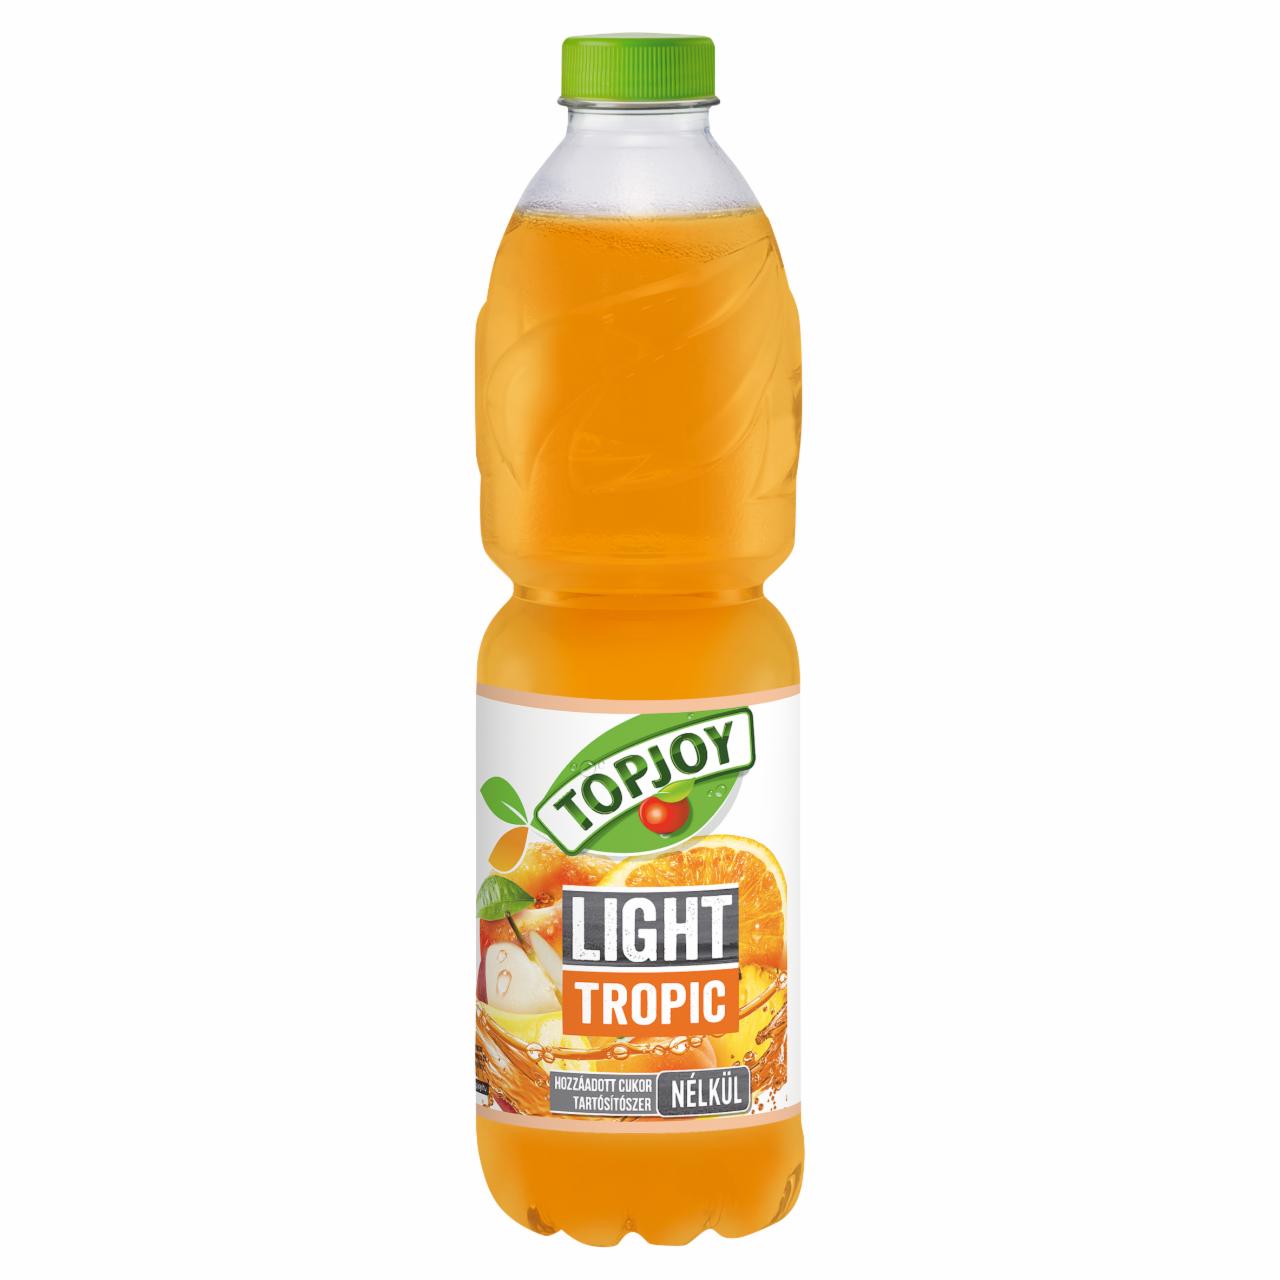 Képek - Topjoy Light Tropic szénsavmentes vegyes gyümölcsital édesítőszerekkel 1,5 l